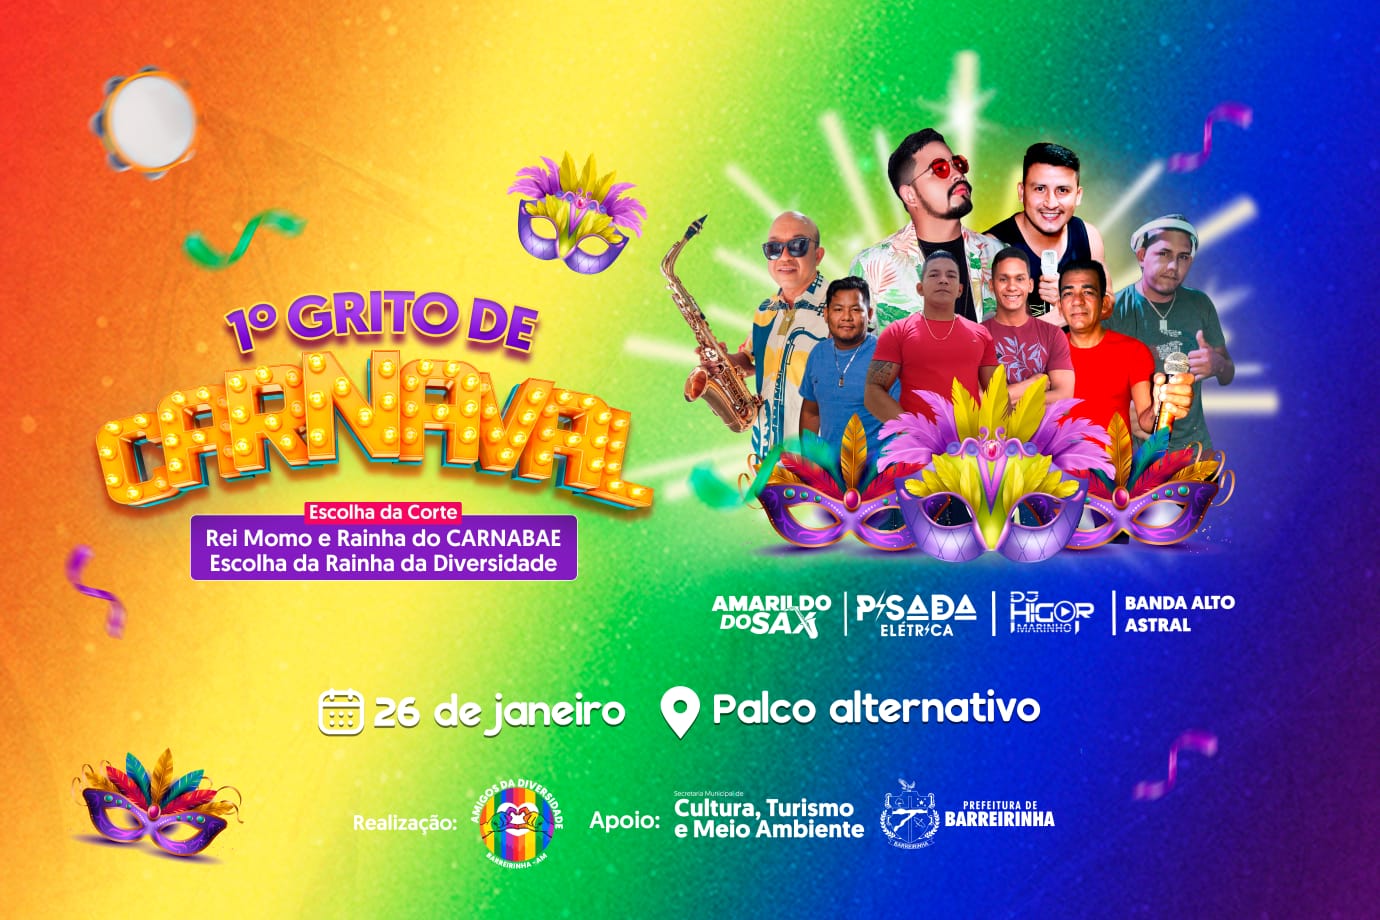 1° Grito de Carnaval de Barreirinha é realizado nesta sexta-feira (26/01)